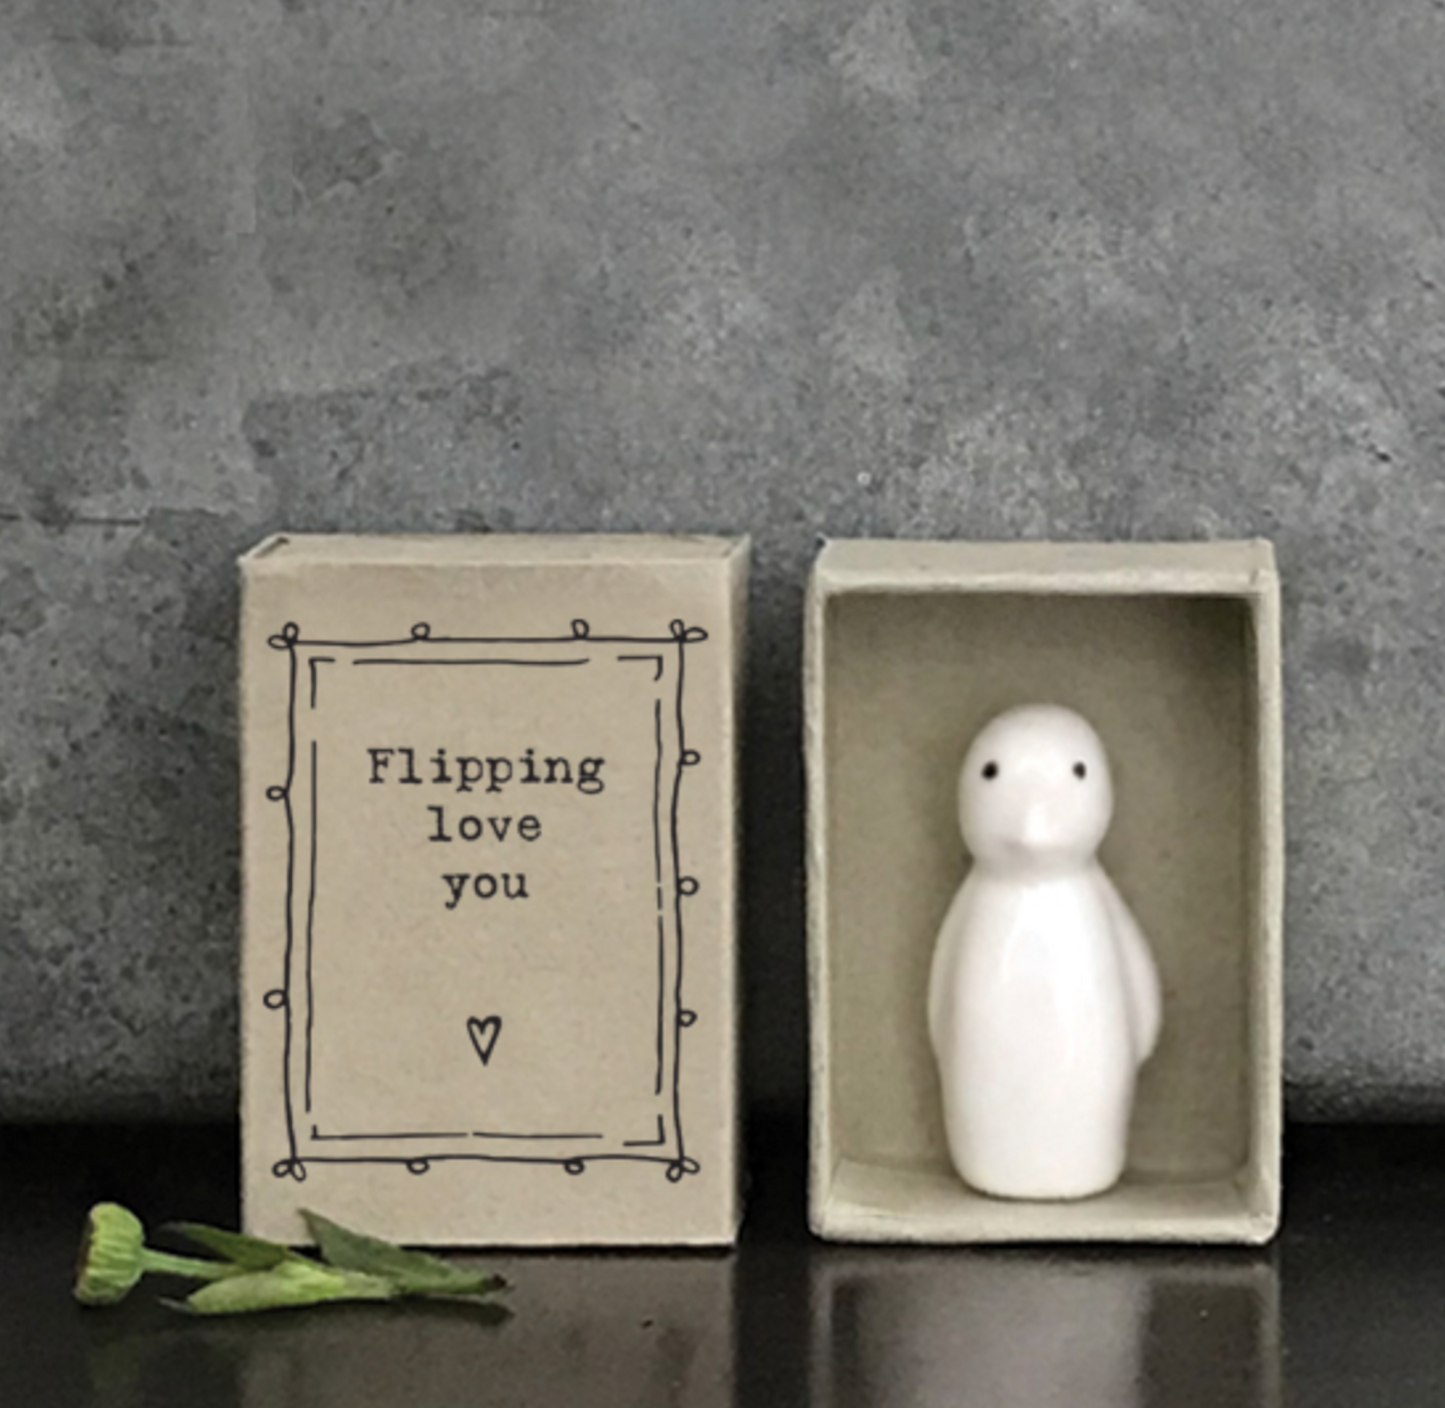 East Of India Matchbox Porcelain Penguin Ornament, Flipping love you, Porcelain penguin, Birthday Gift, Porcelain Gift, Home Gift